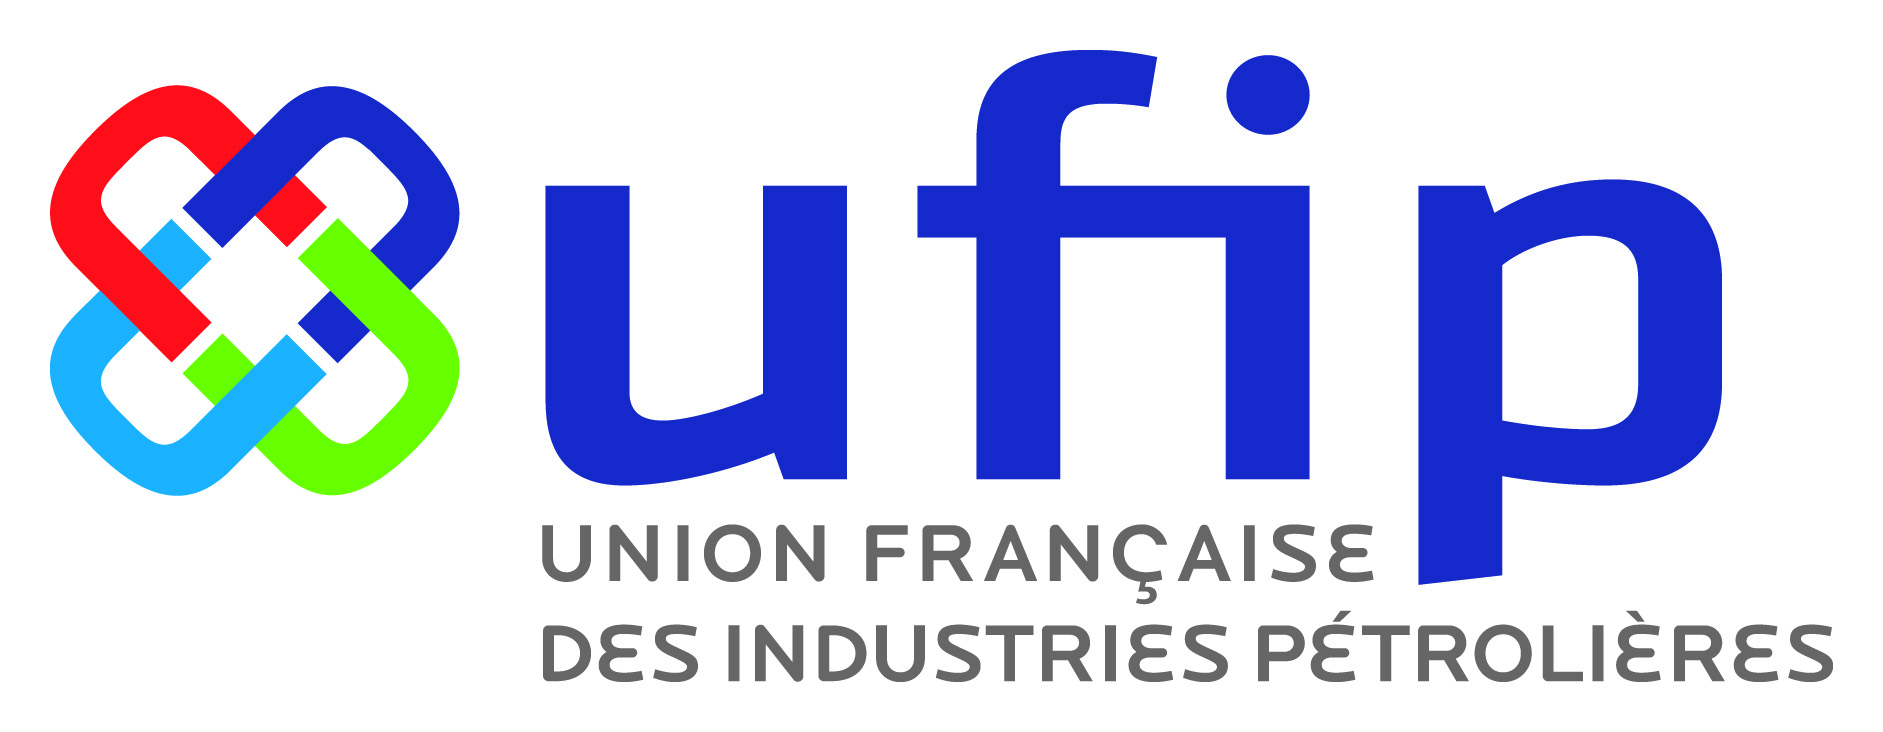 logo UFIP Union Française des Industries Pétrolières